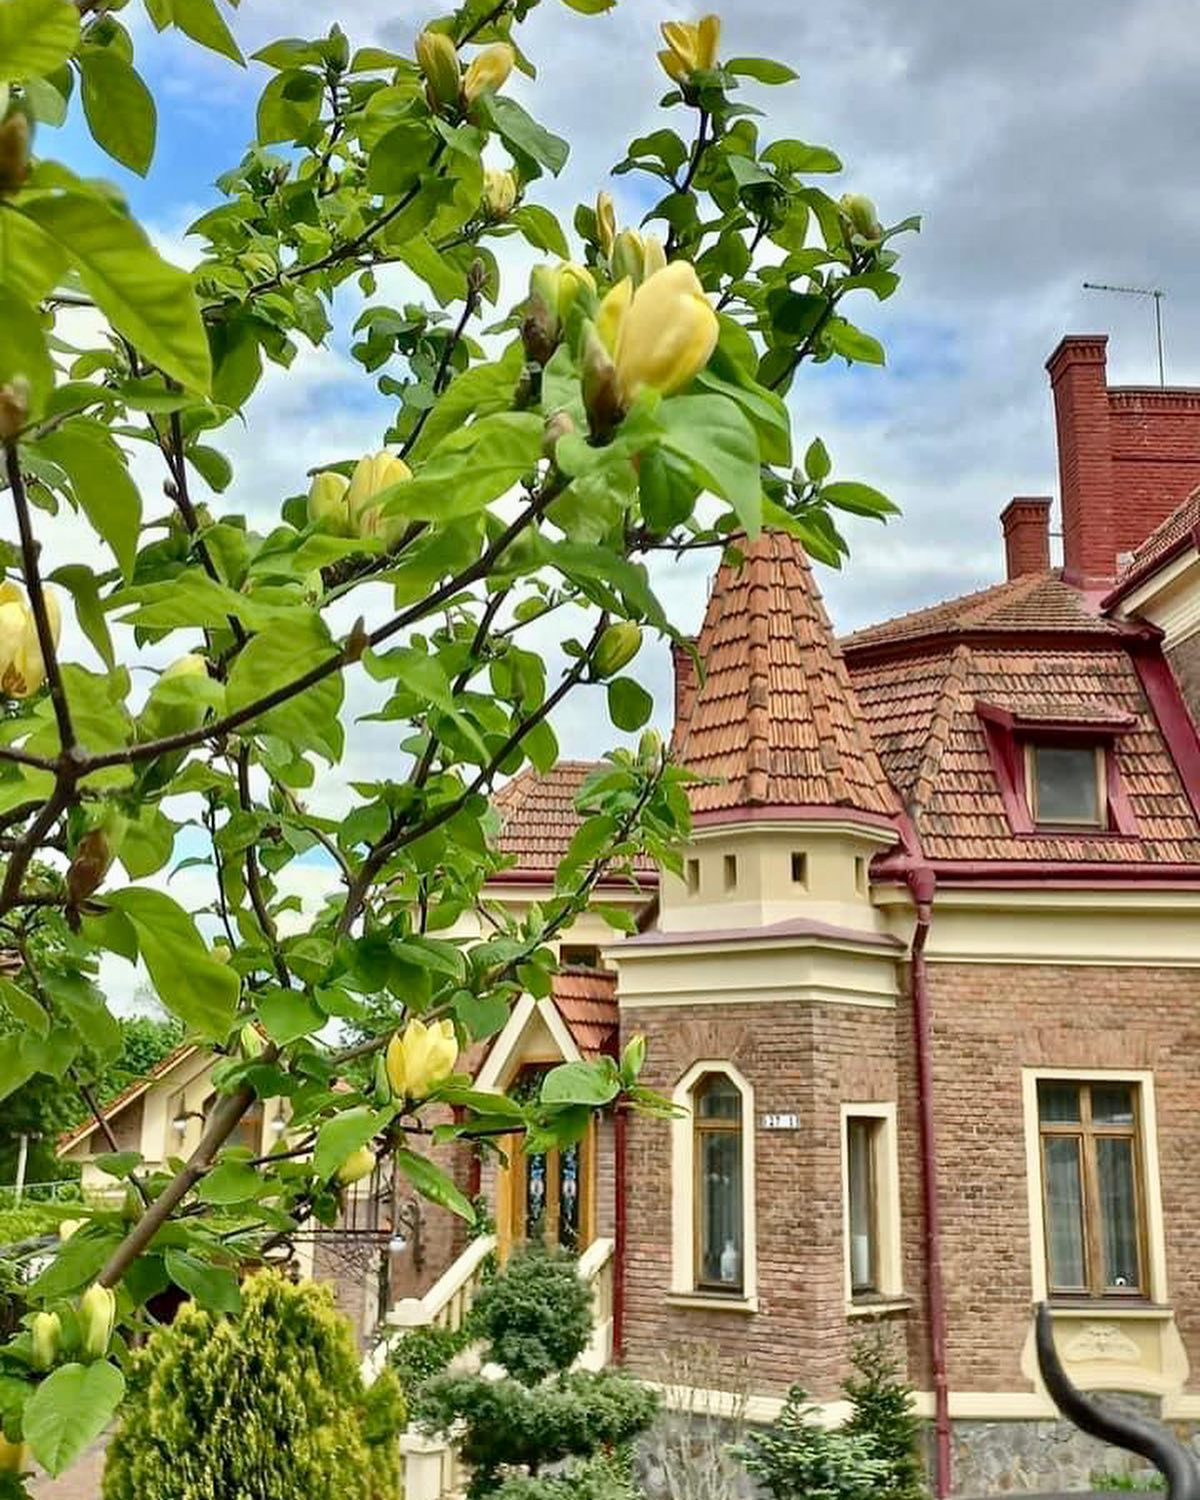 Жемчужина Буковины – колоритный город Черновцы. Источник: Instagram